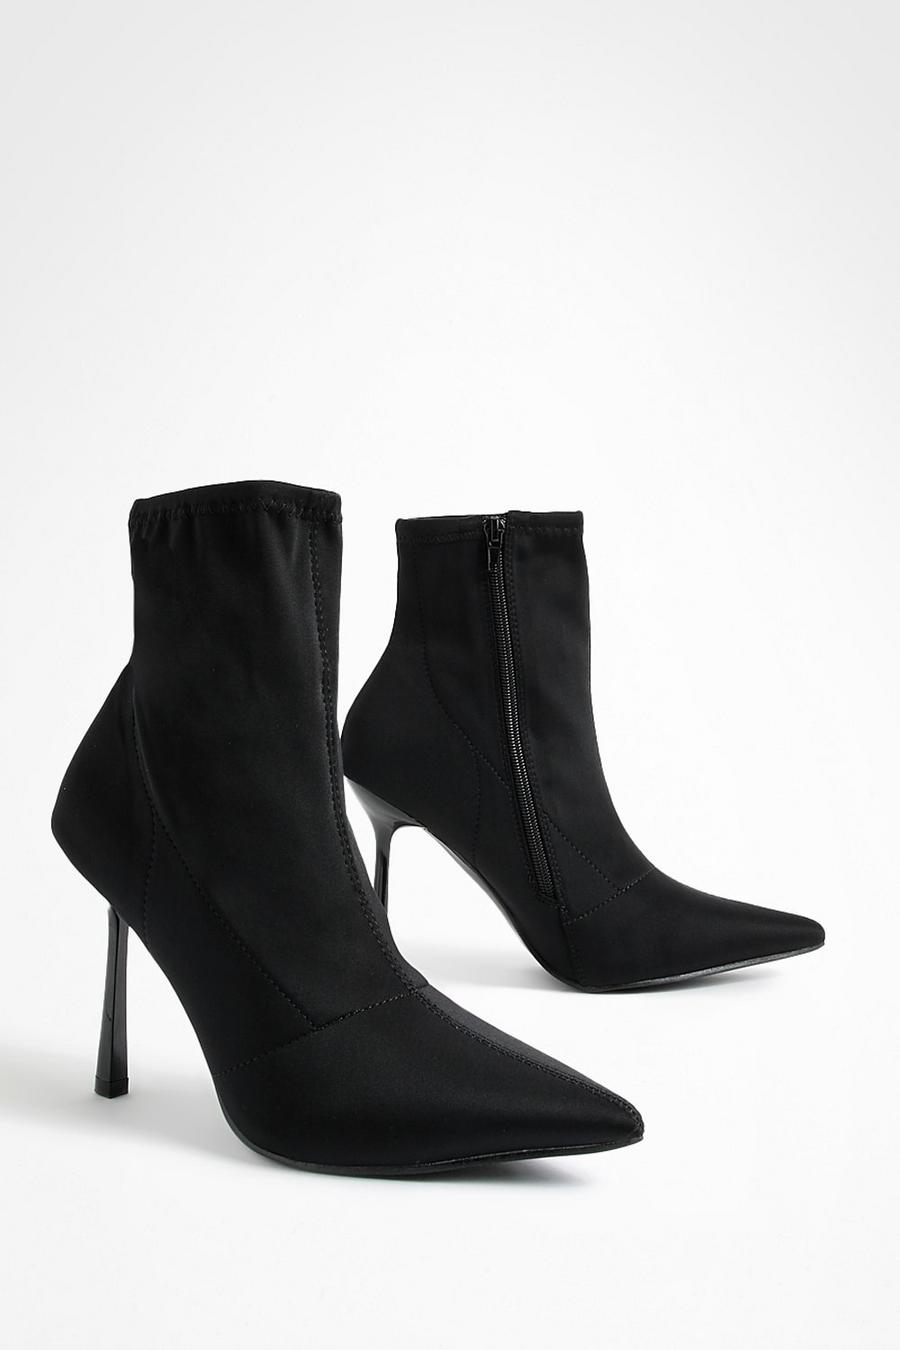 Schwarze Neopren Socken-Stiefel mit Stiletto-Absatz, Black